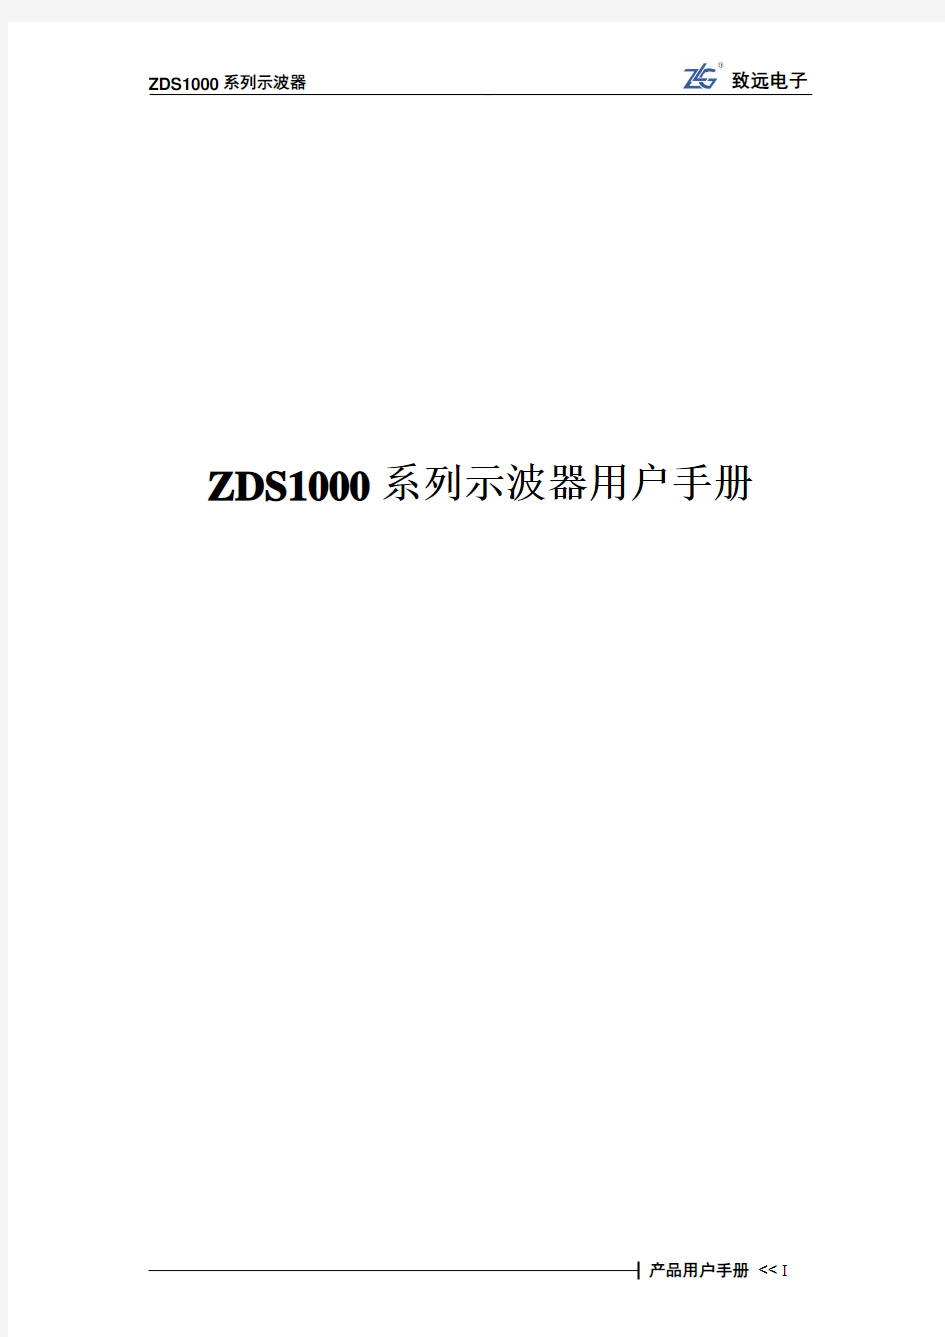 ZDS1000系列示波器用户手册